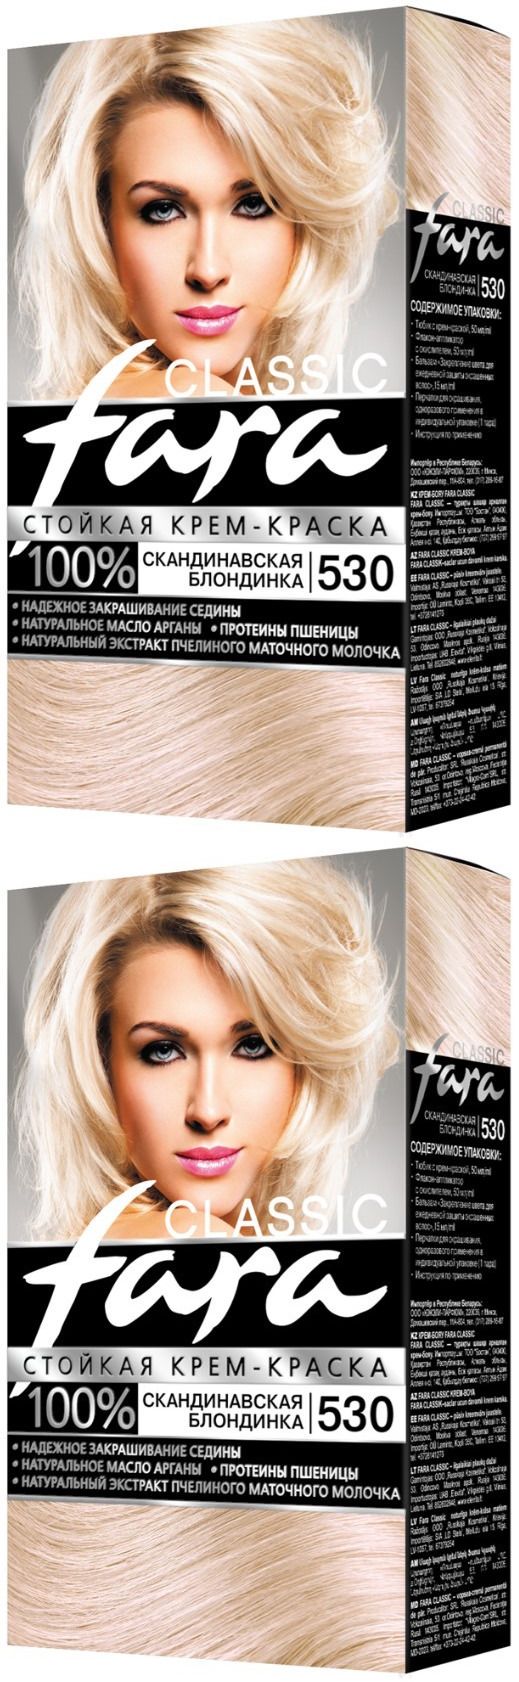 Краска для волос Fara Classic, тон 530, скандинавская блондинка, 2 шт. блондинка